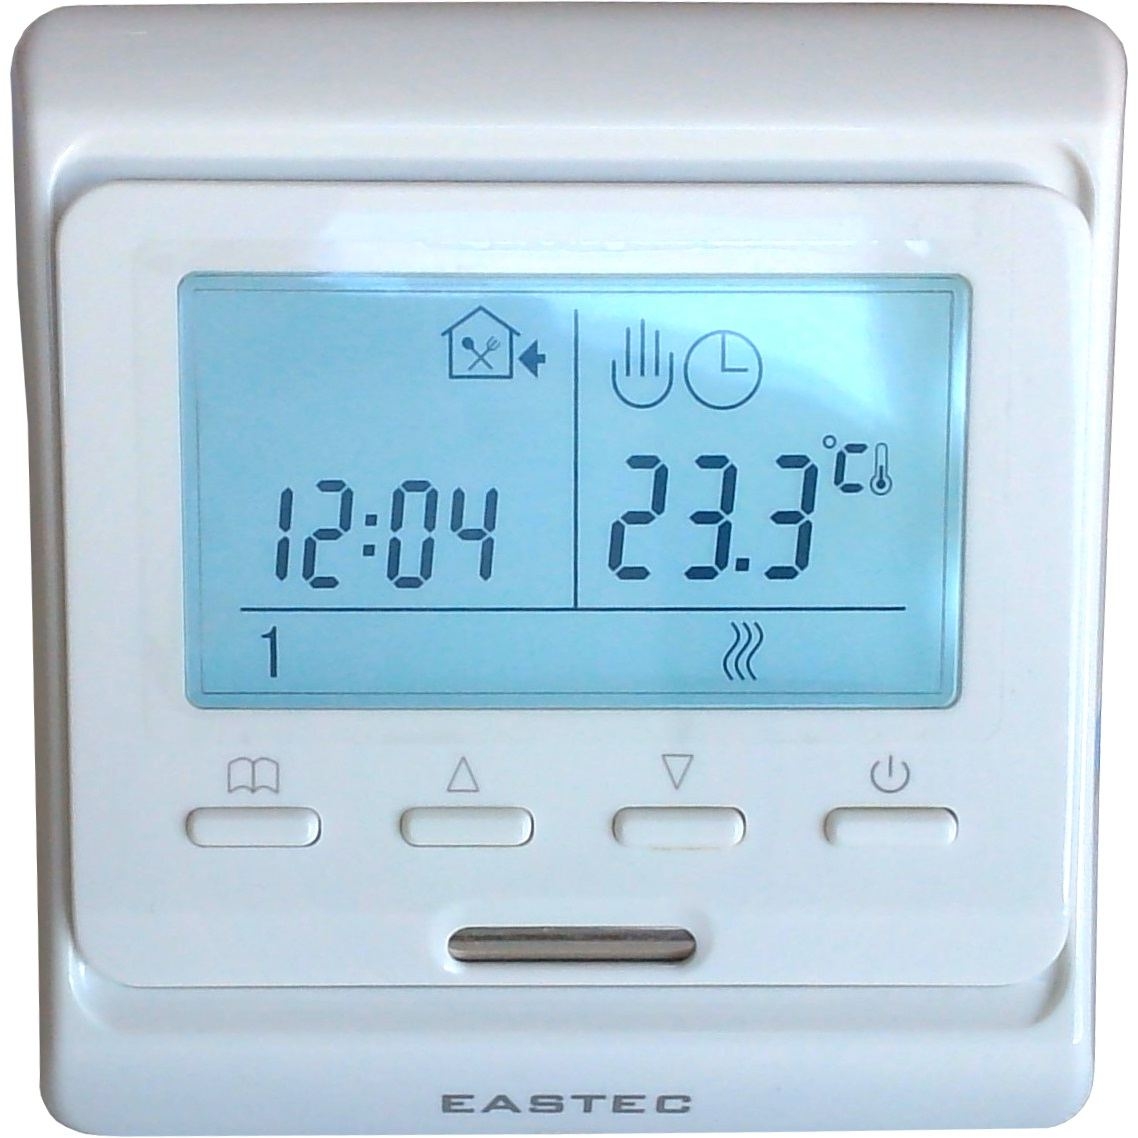 фото Терморегулятор eastec e51.716 для теплых полов и обогревателей. встраиваемый